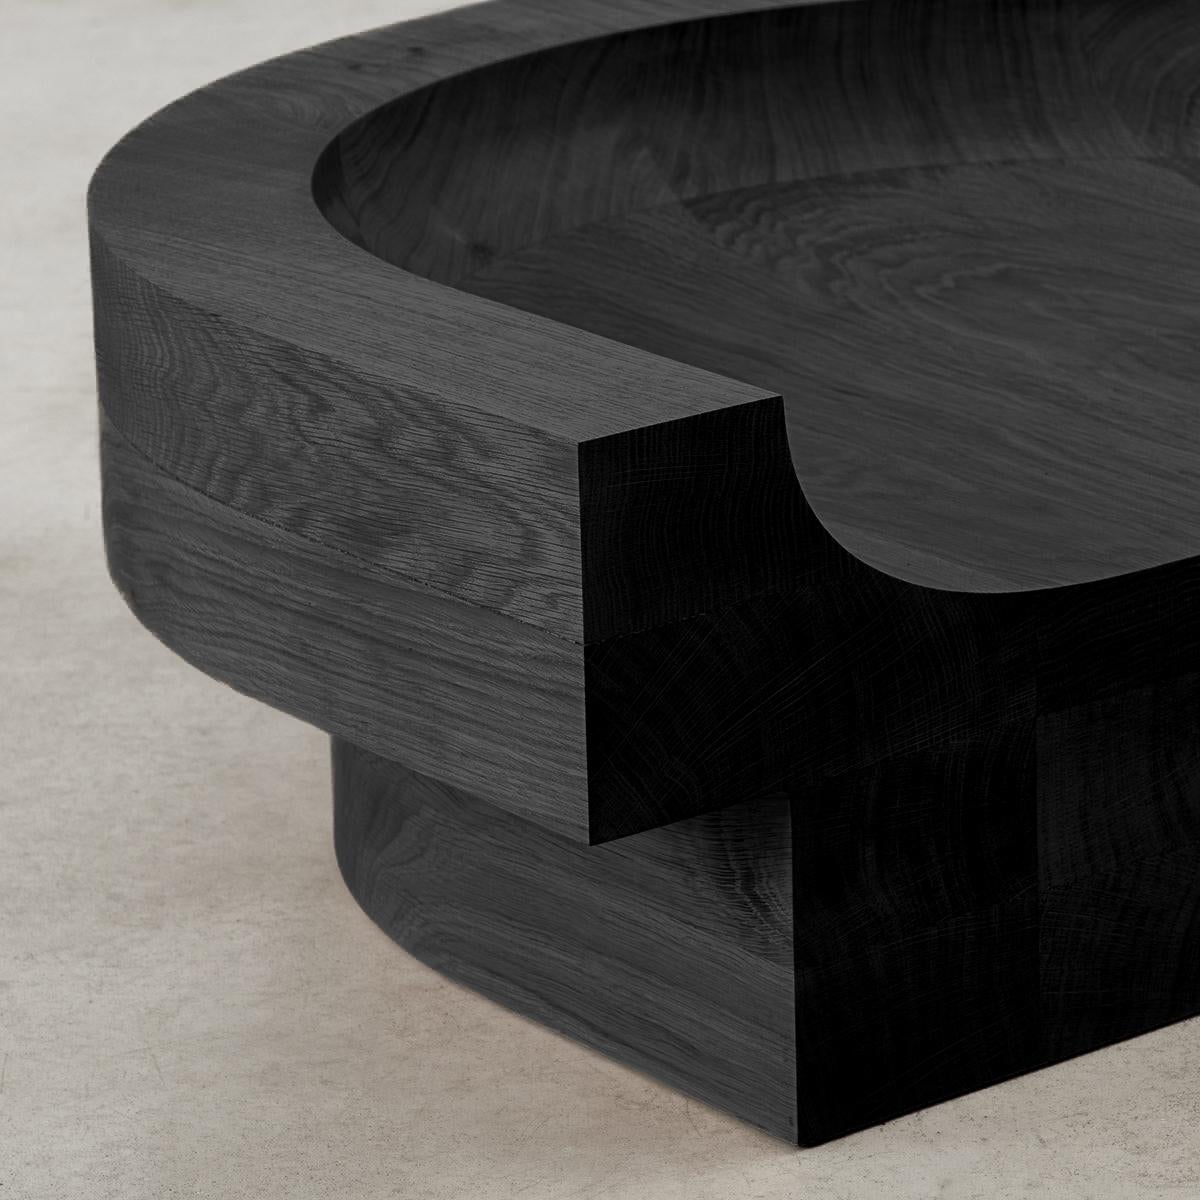 Benni Allan 'Low Seat' in blackened oak by EBBA, UK, 2023 For Sale 1